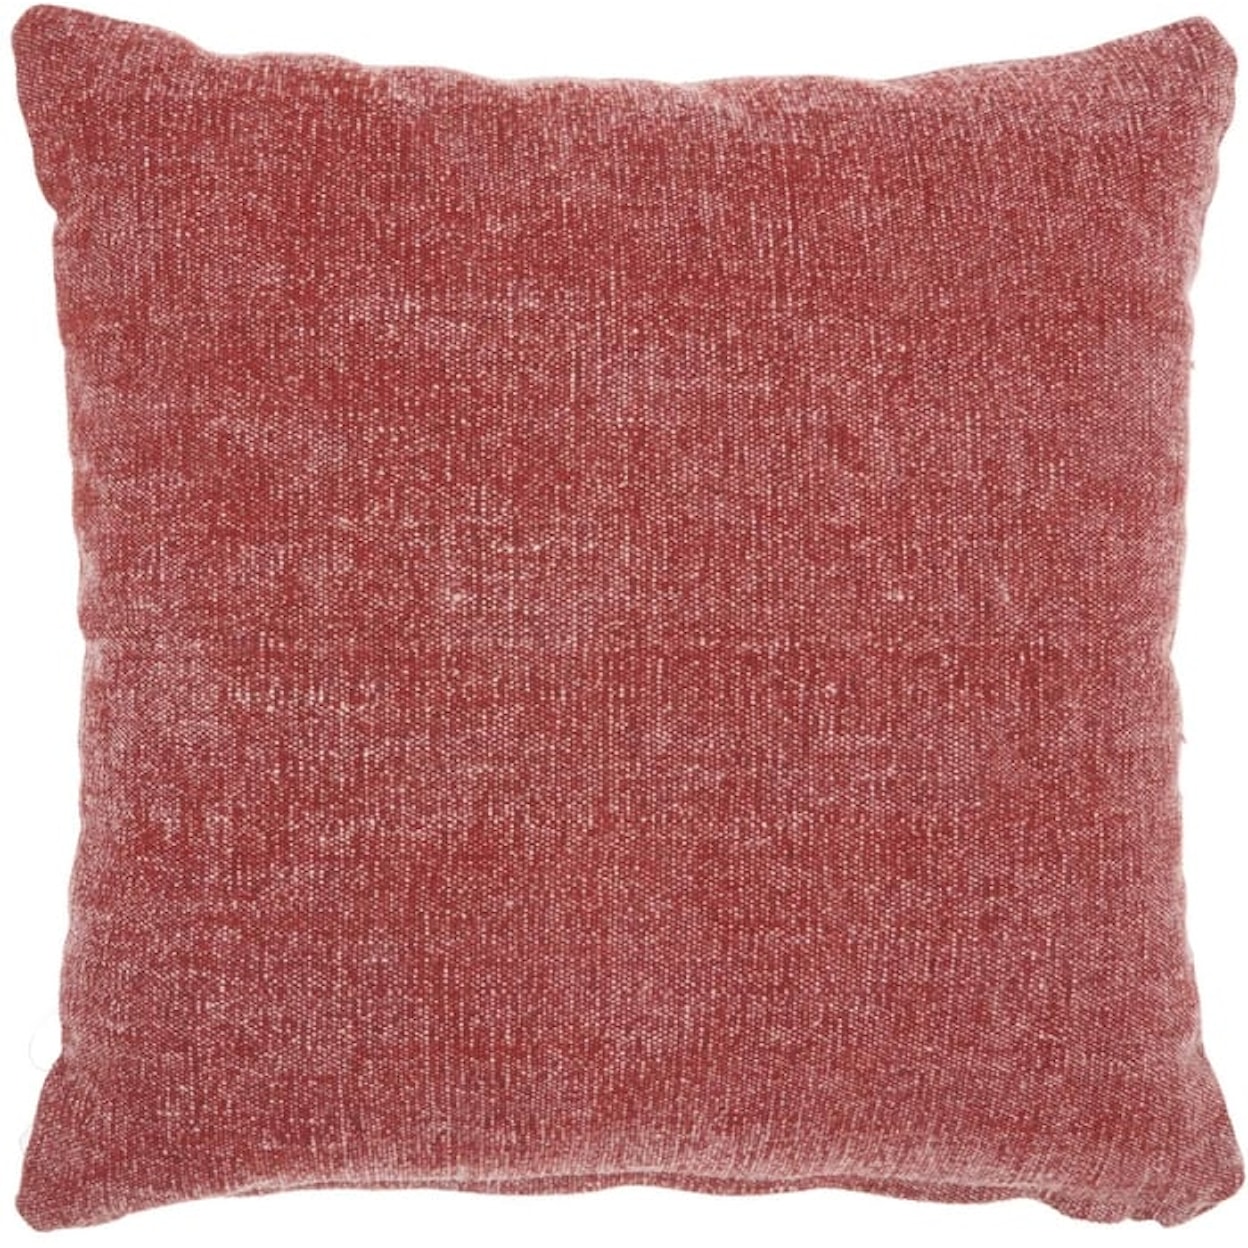 Nourison Home Throw Pillows Lifestyle Red Throw Pillow